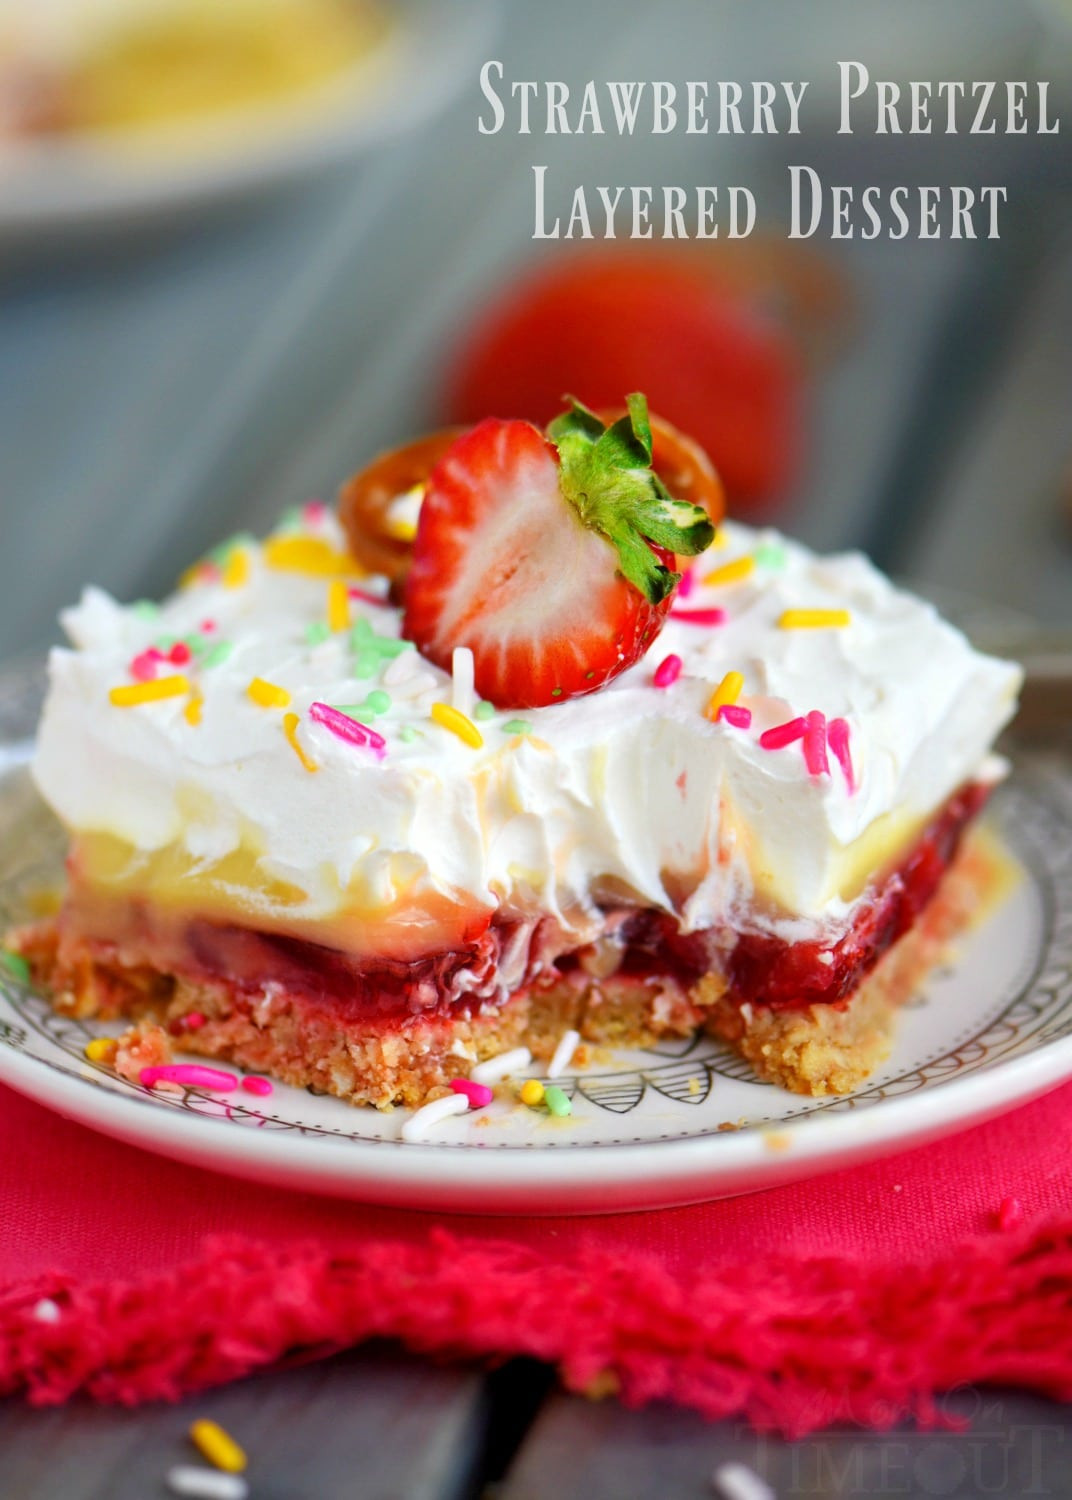 Pretzel Crust Desserts
 No Bake Strawberry Pretzel Layered Dessert Mom Timeout